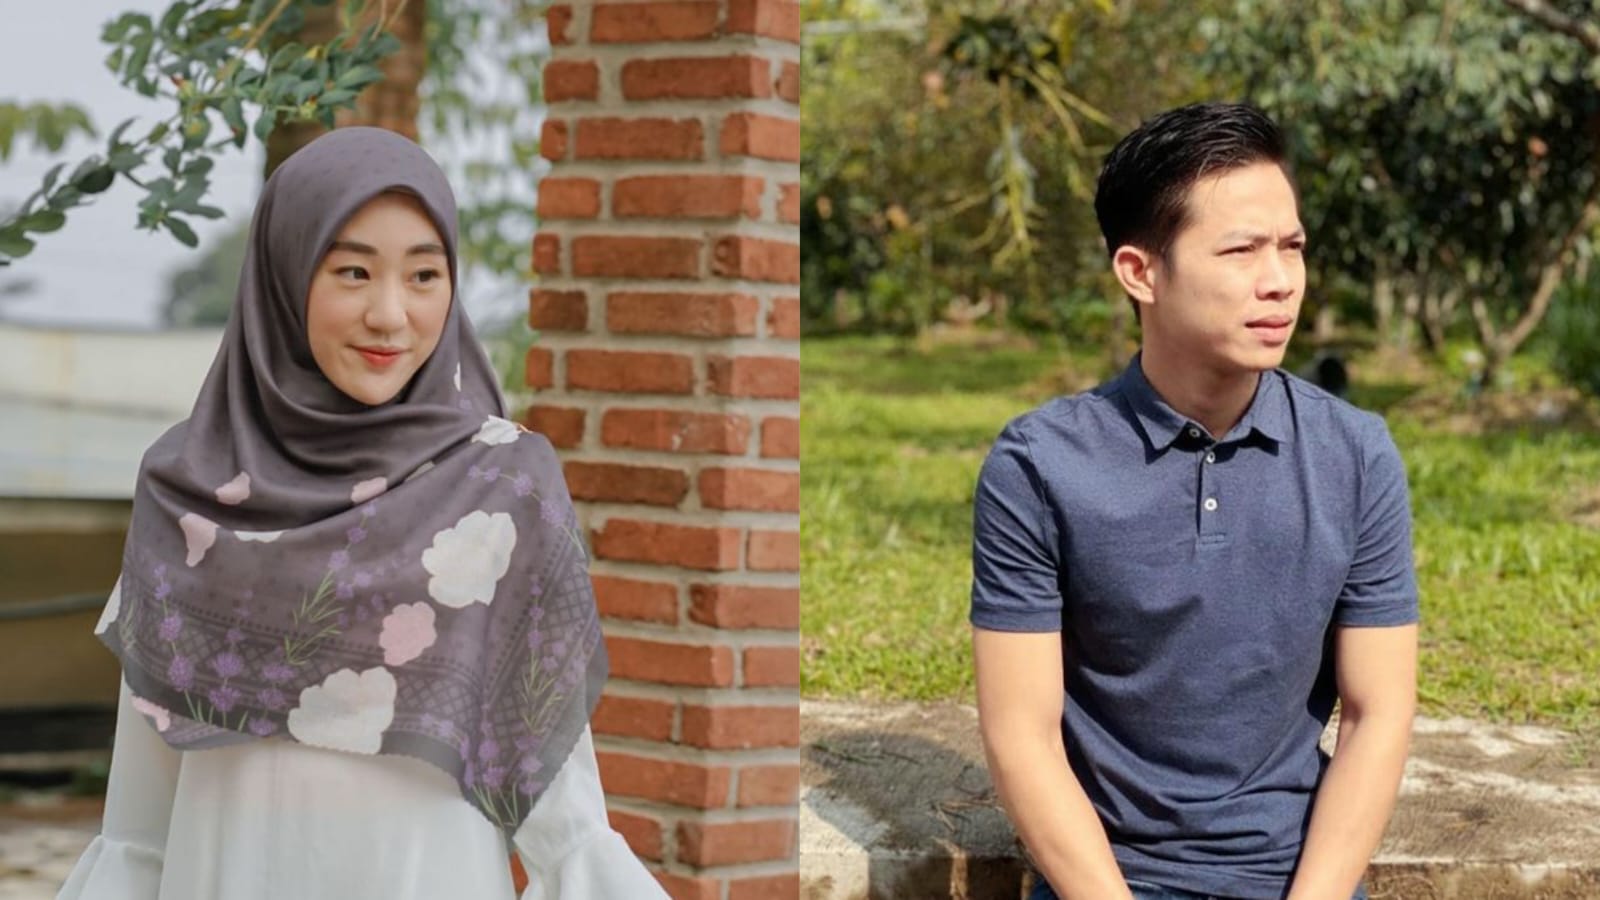 Profil Ikram Rosadi, Calon Suami Larissa Chou yang Jadi Sorotan Netizen, Punya Jabatan Penting di Pemuda Pancasila